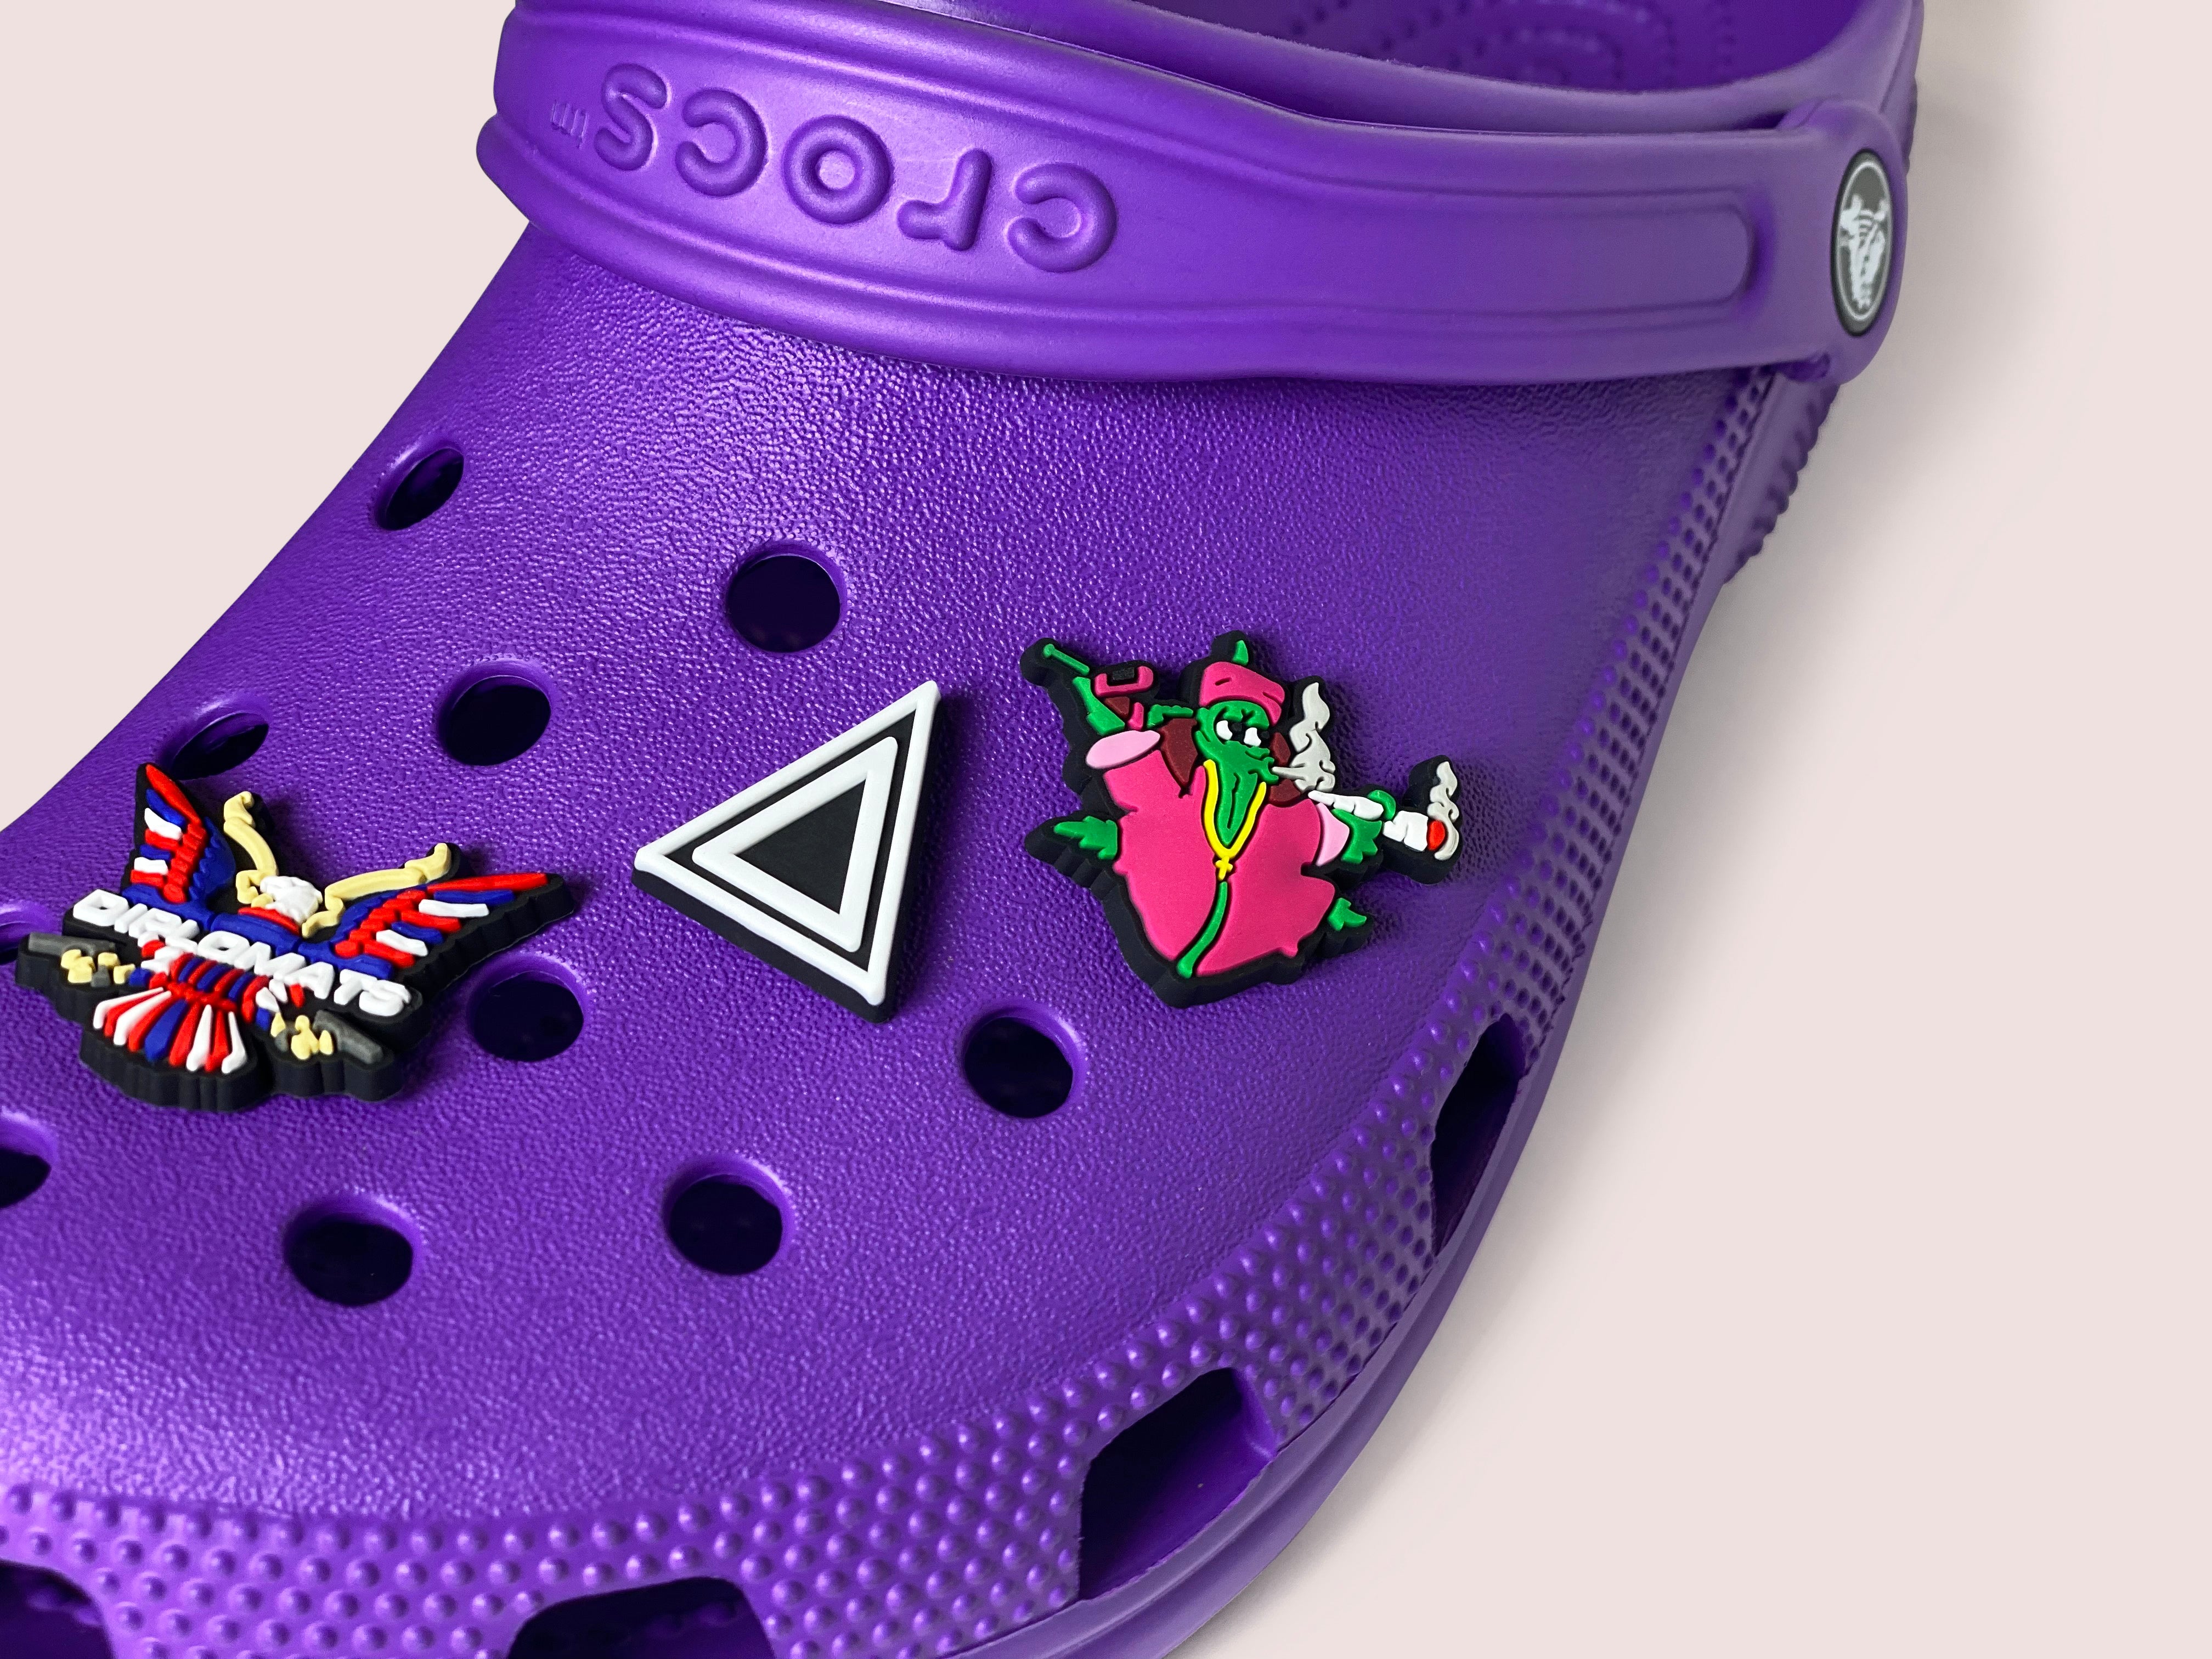 CROCS, Other, 6pc Disney Croc Charms For Croc Shoes Jibbitz